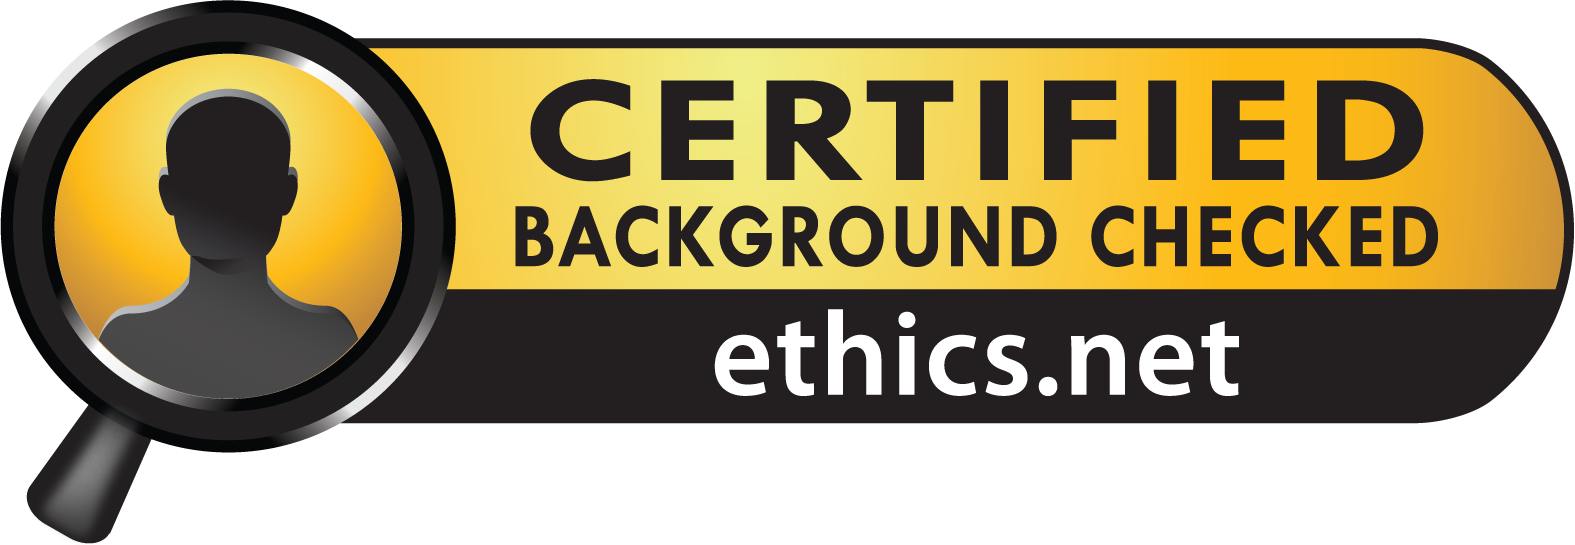 www.ethics.net